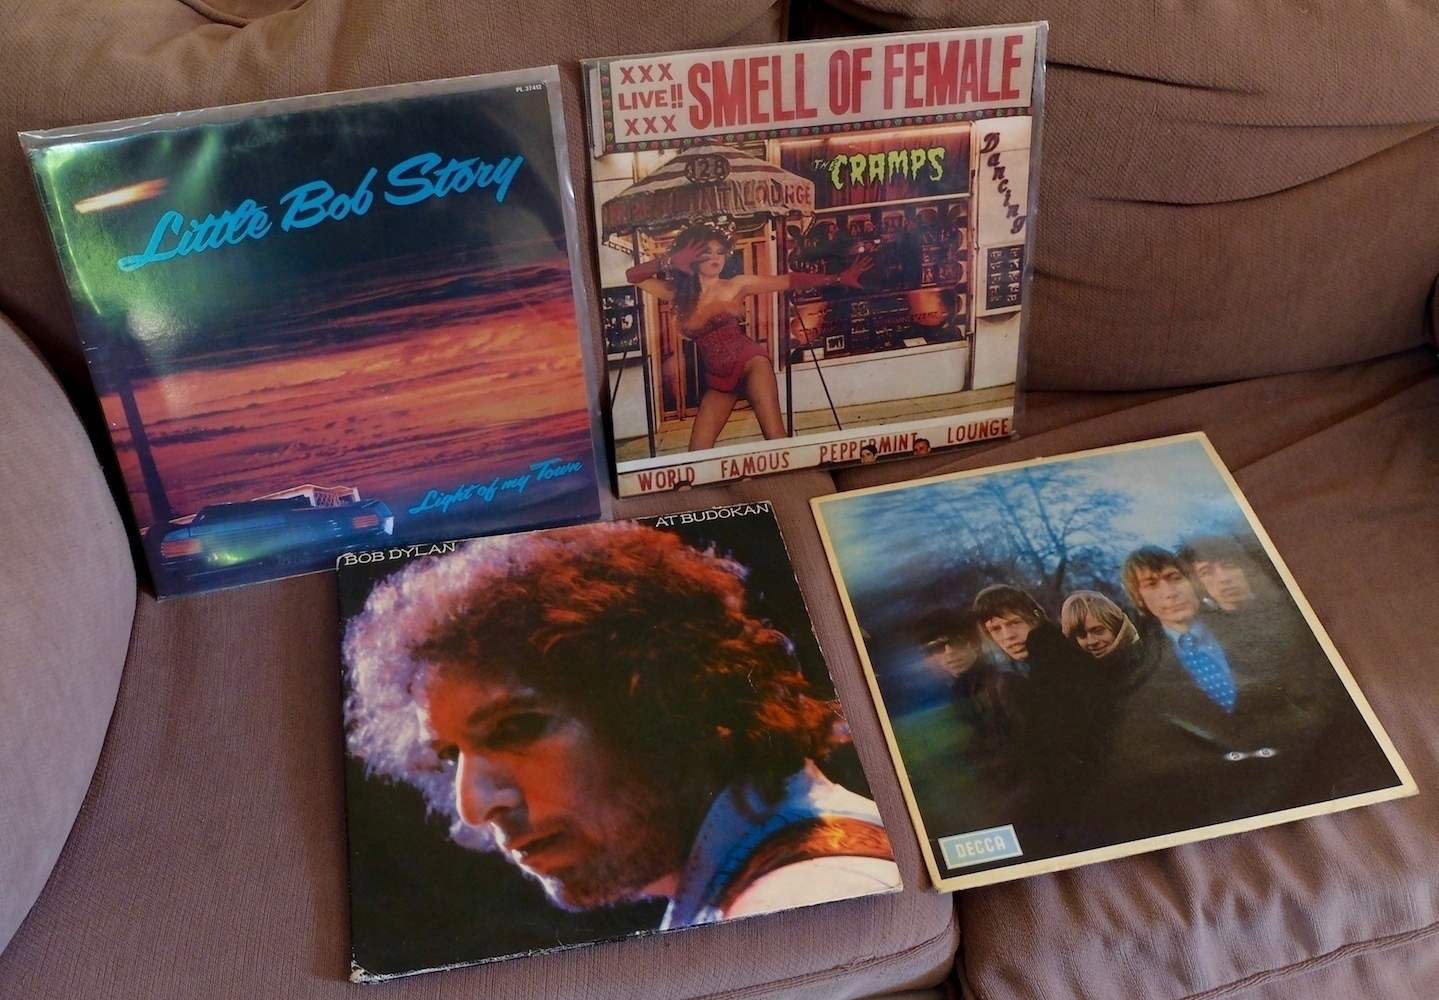 Dylan, Stones, Cramps et Little Bob. 4 disques vinyles